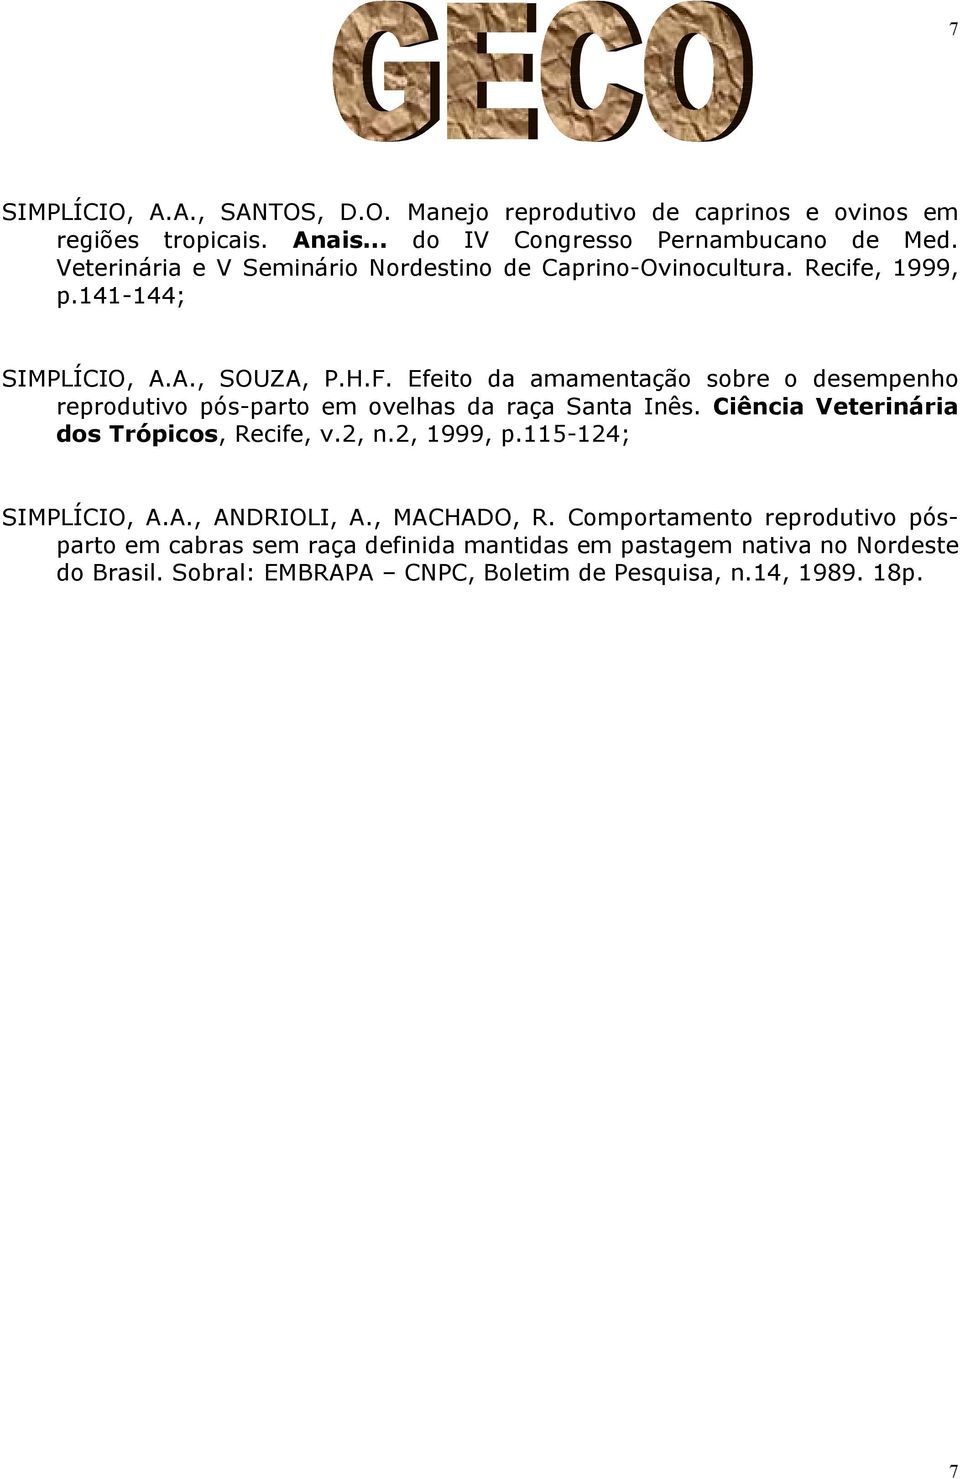 Efeito da amamentação sobre o desempenho reprodutivo pós-parto em ovelhas da raça Santa Inês. Ciência Veterinária dos Trópicos, Recife, v.2, n.2, 1999, p.